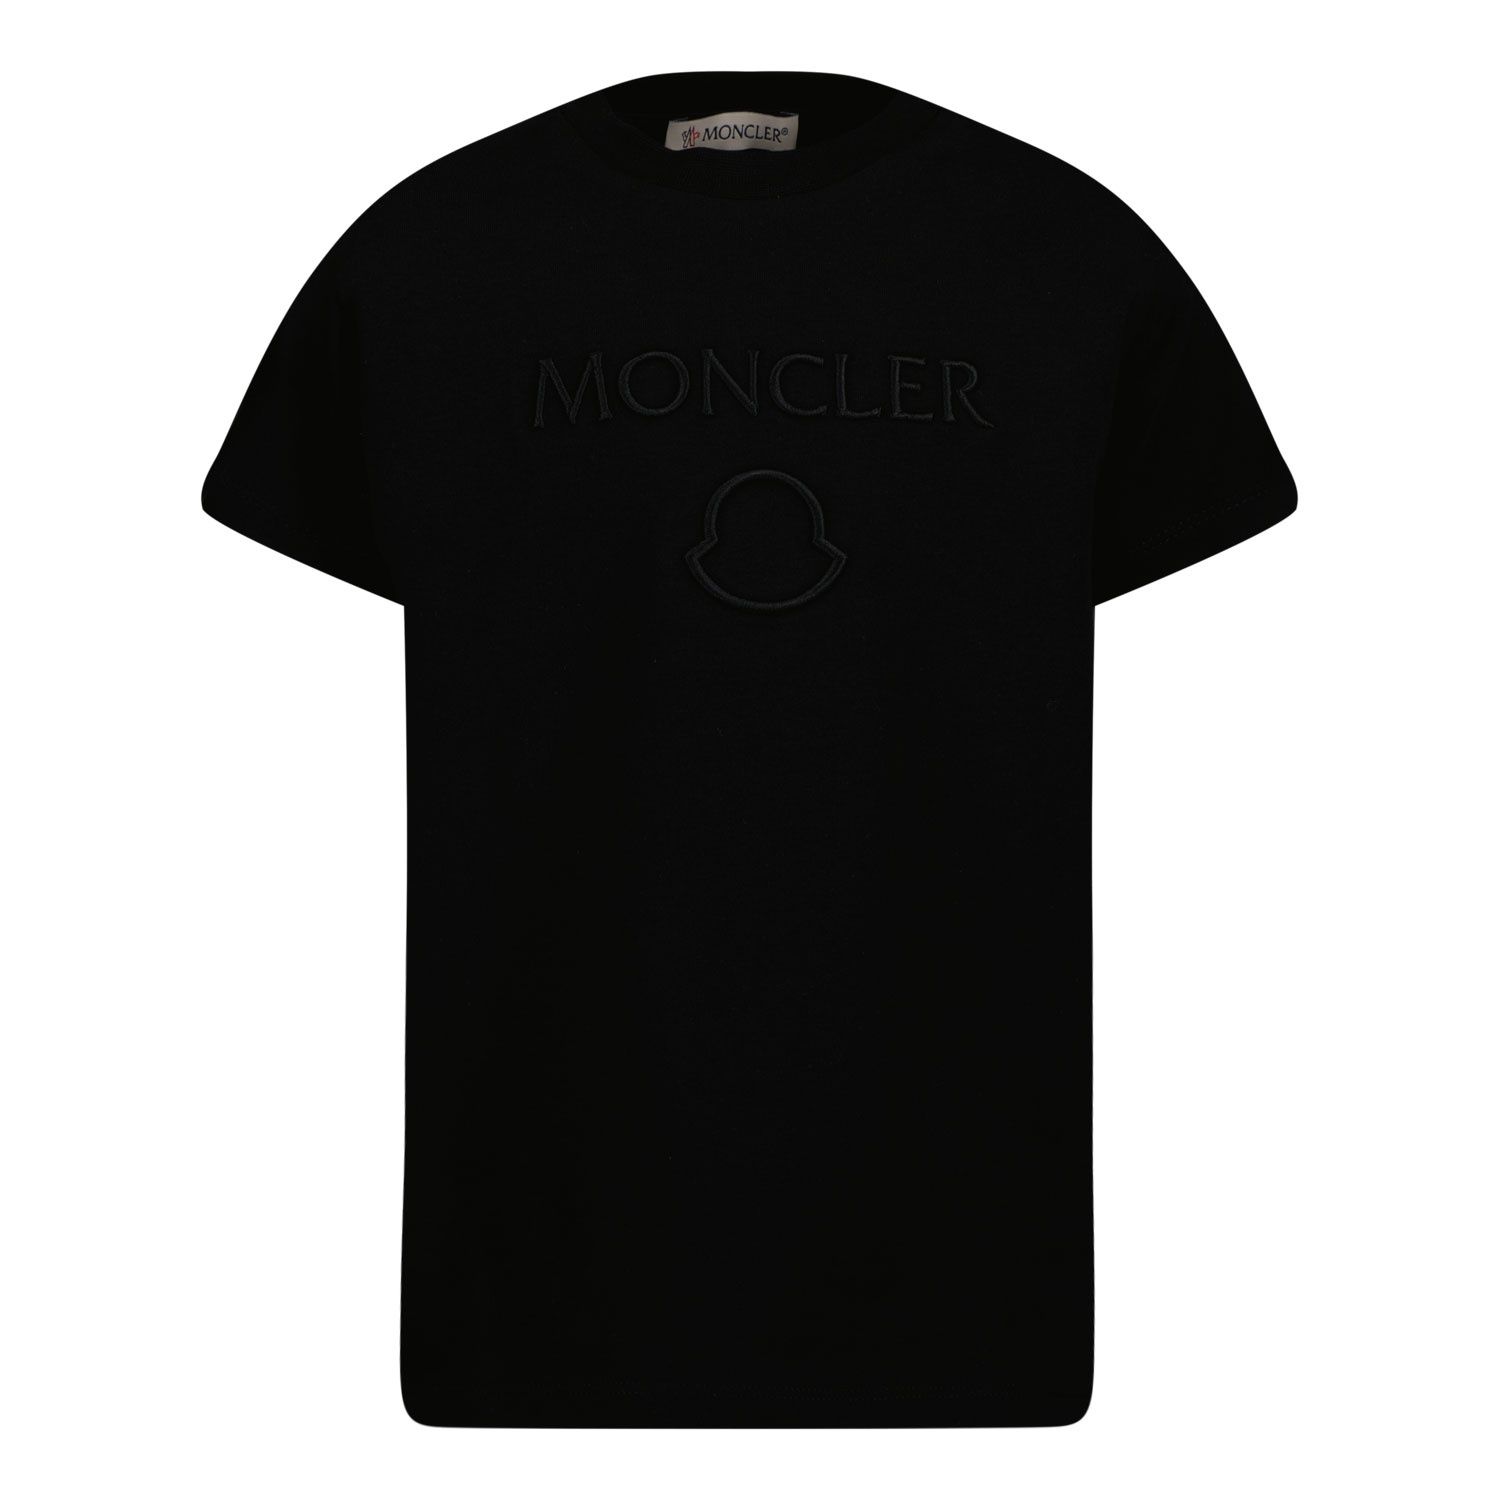 Afbeelding van Moncler H19548C0001283907 baby t-shirt zwart